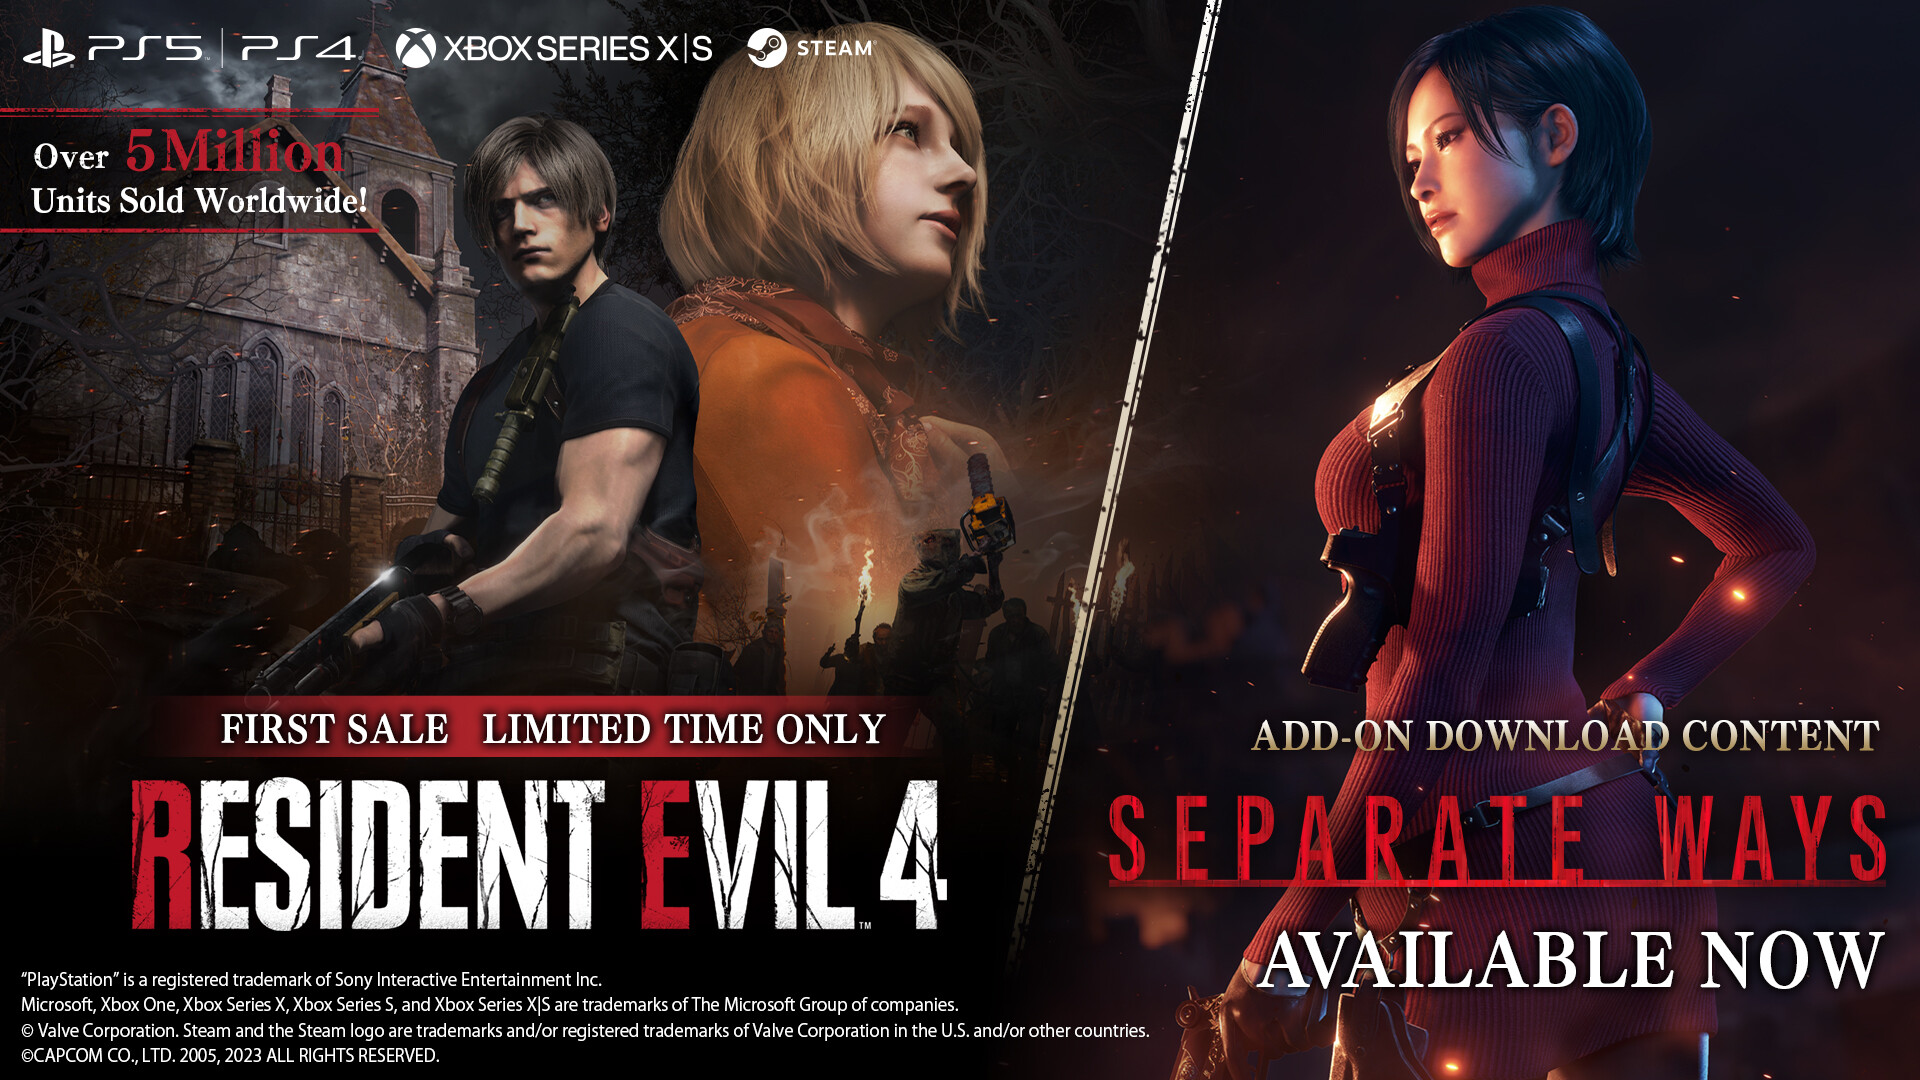 DLC เกม Resident Evil 4 พร้อมให้เล่นแล้ววันนี้ เผยแอคชั่นใหม่สุดระทึก กับฟีลการเล่นที่แตกต่าง